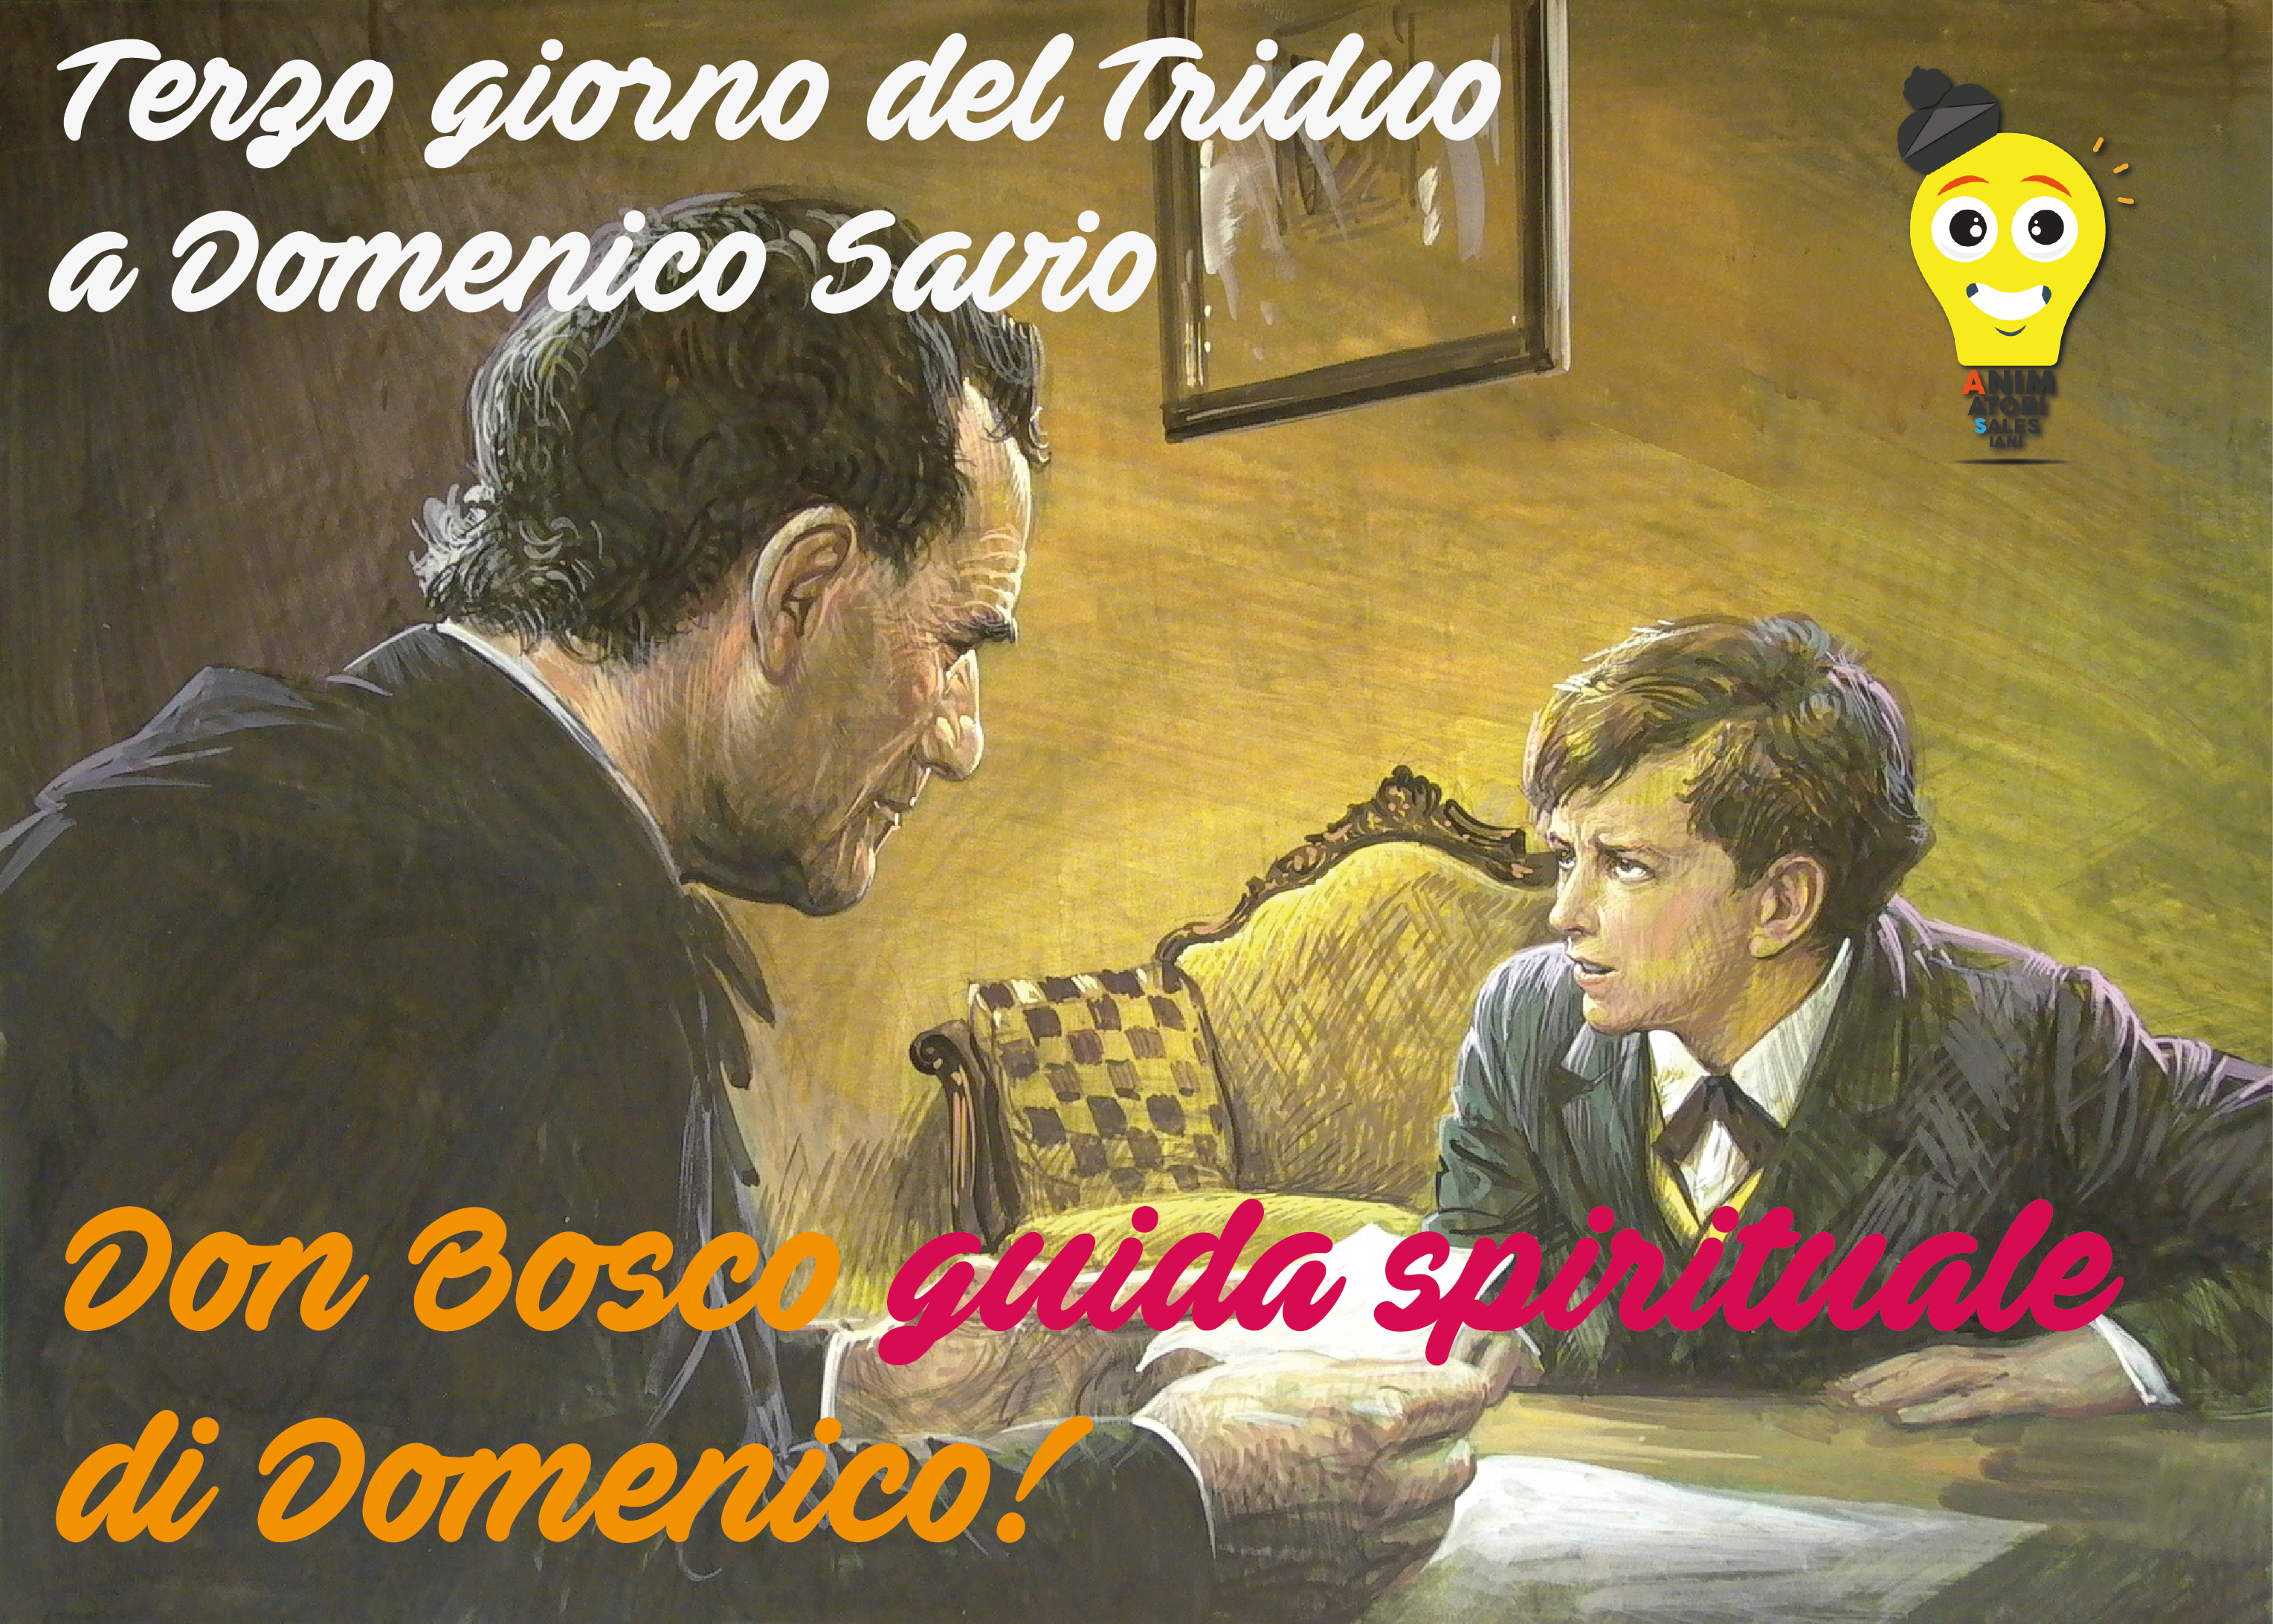 Terzo giorno del triduo a Domenico Savio: Don Bosco guida spirituale di Domenico!